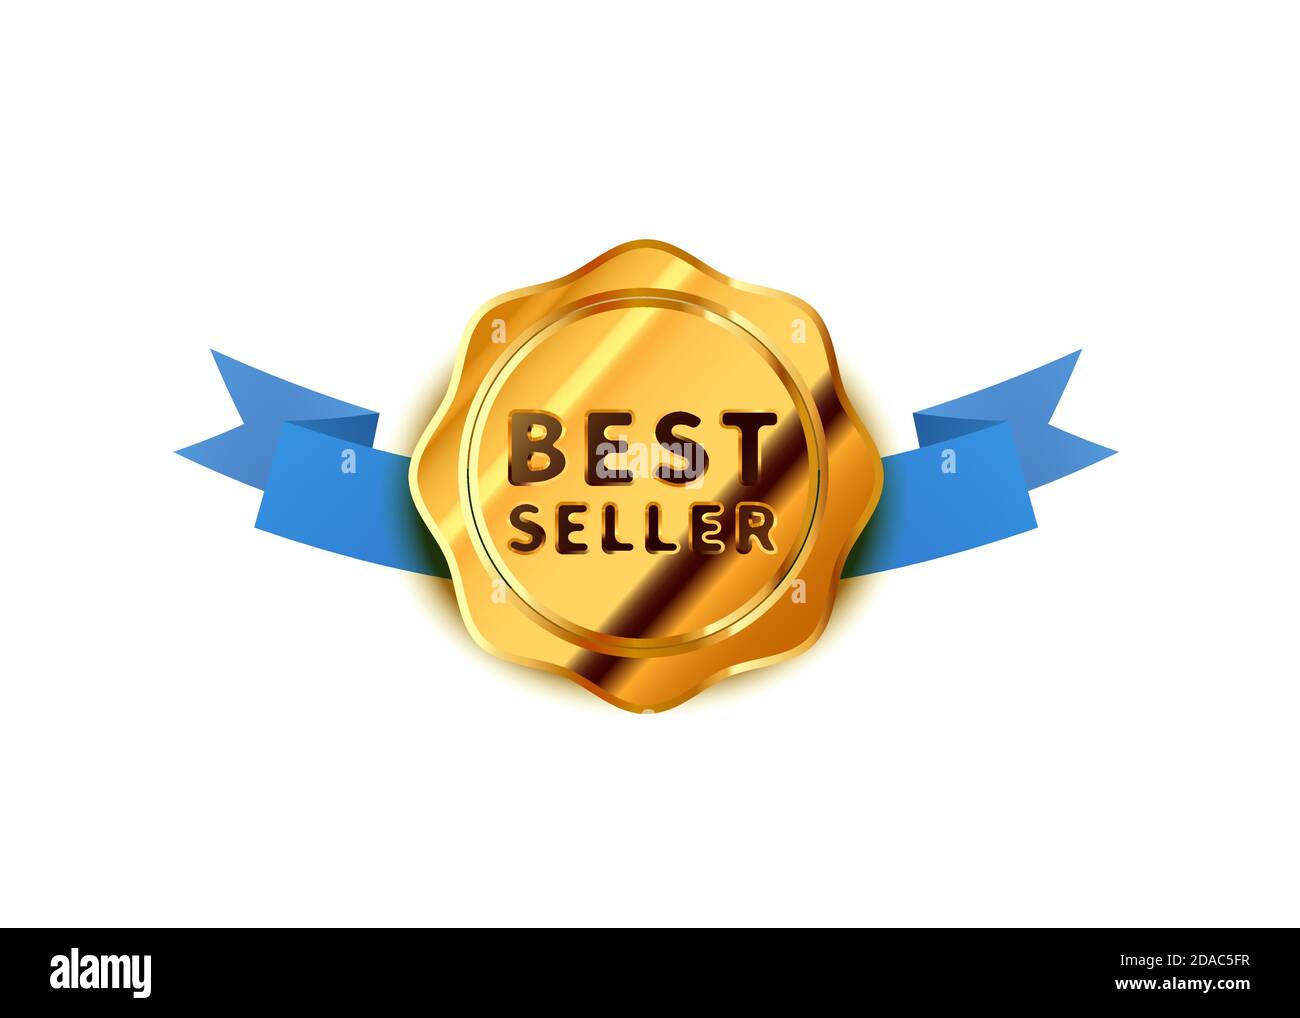 Leuchtendes goldenes Abzeichen mit blauem Band, glänzendes Bestseller-Symbol auf Weiß Stock Vektor